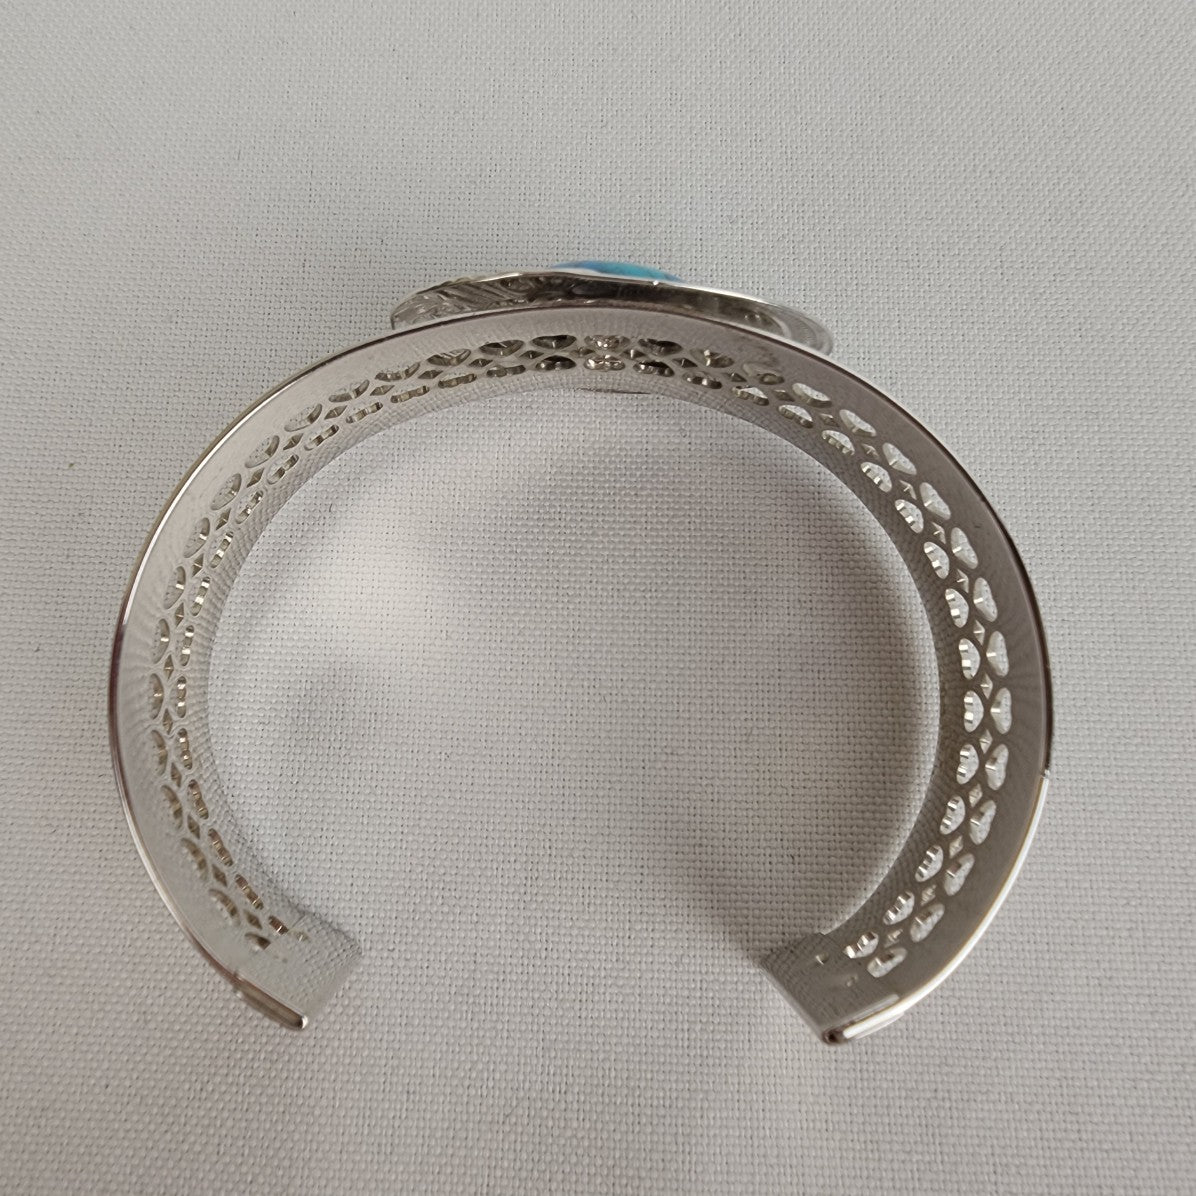 Vintage Silver Tone Faux Turquoise Cuff Bracelet